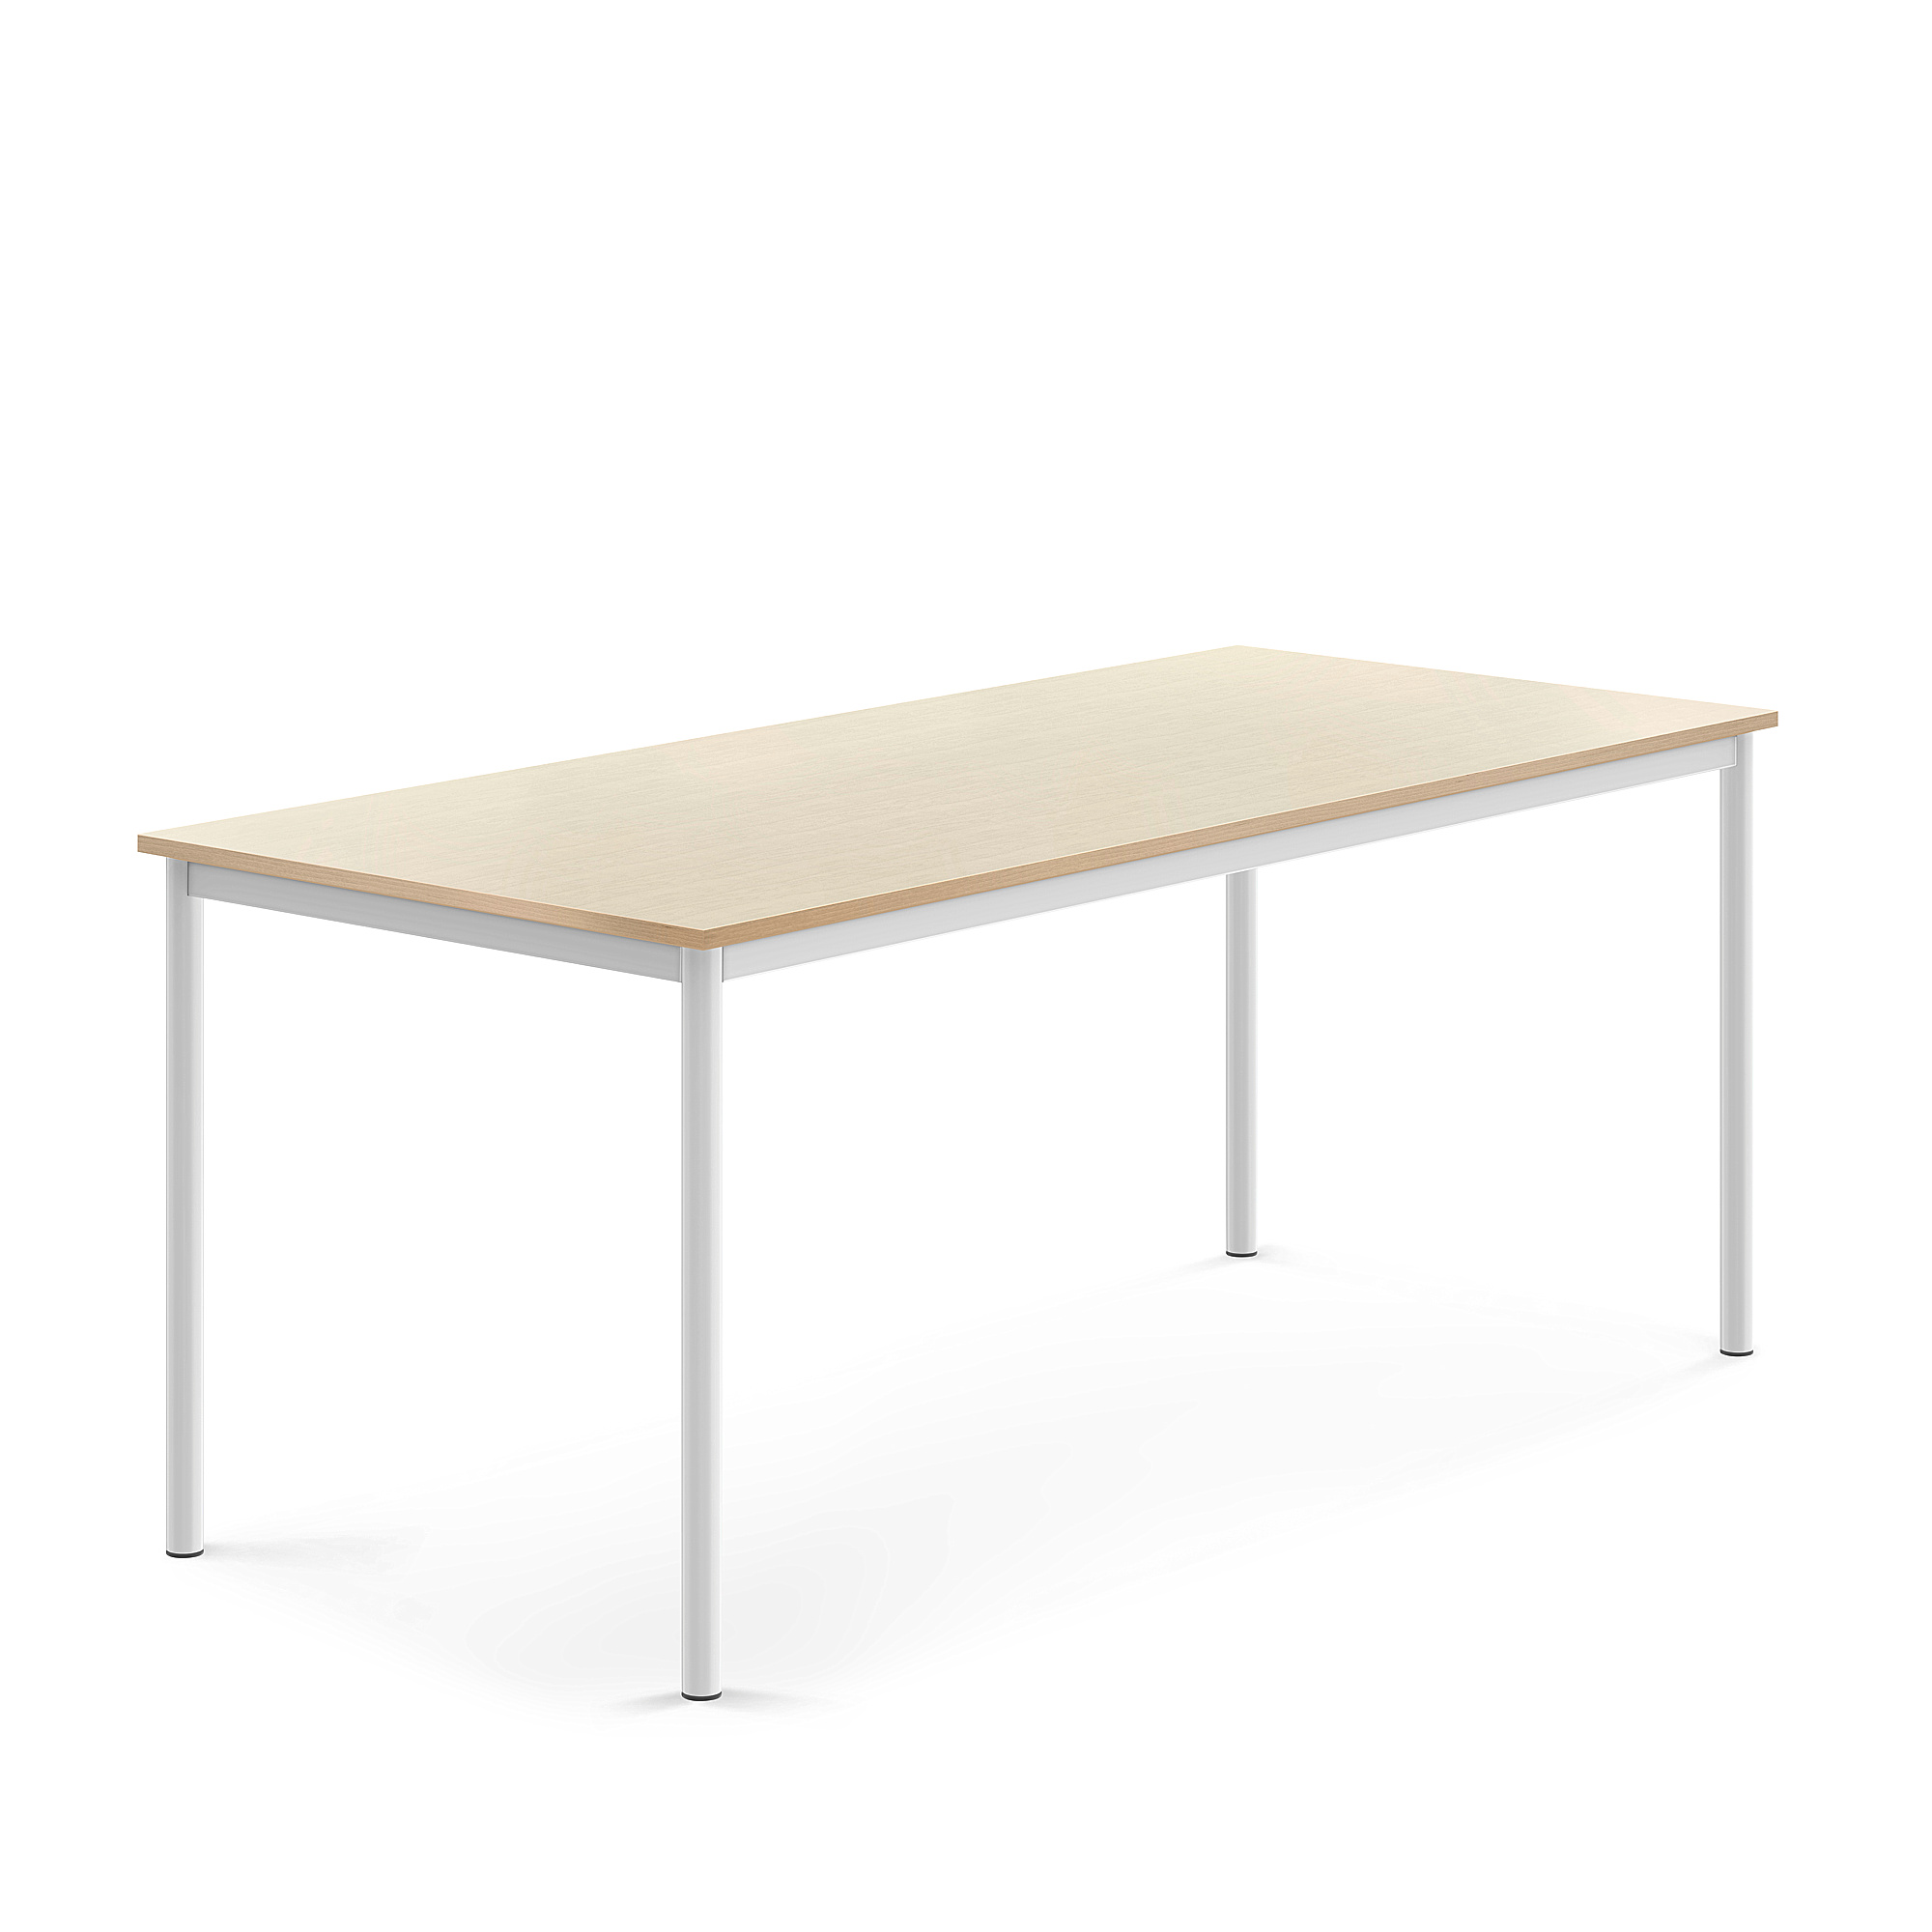 Stůl SONITUS, 1800x800x720 mm, bílé nohy, HPL deska tlumící hluk, bříza